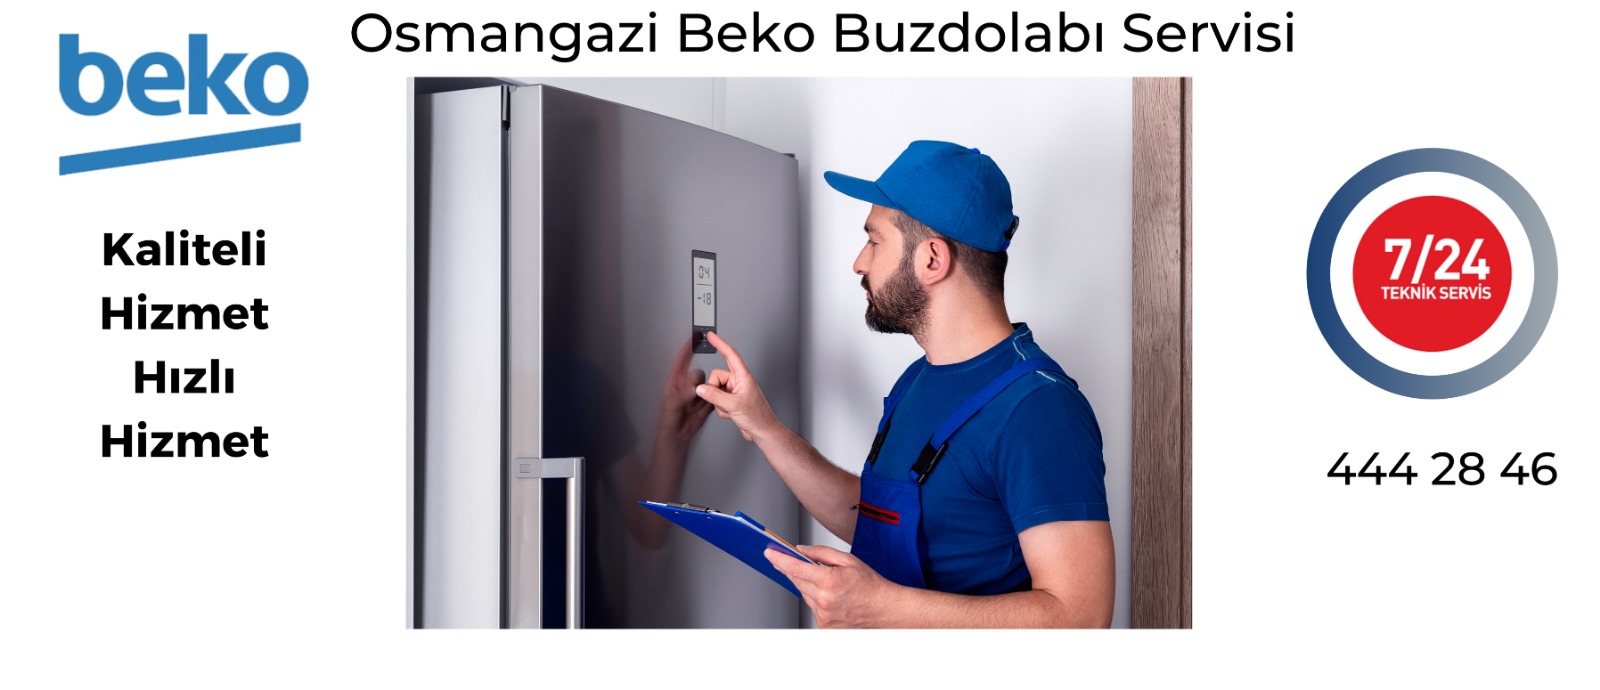 Osmangazi Beko Buzdolabı Servisi